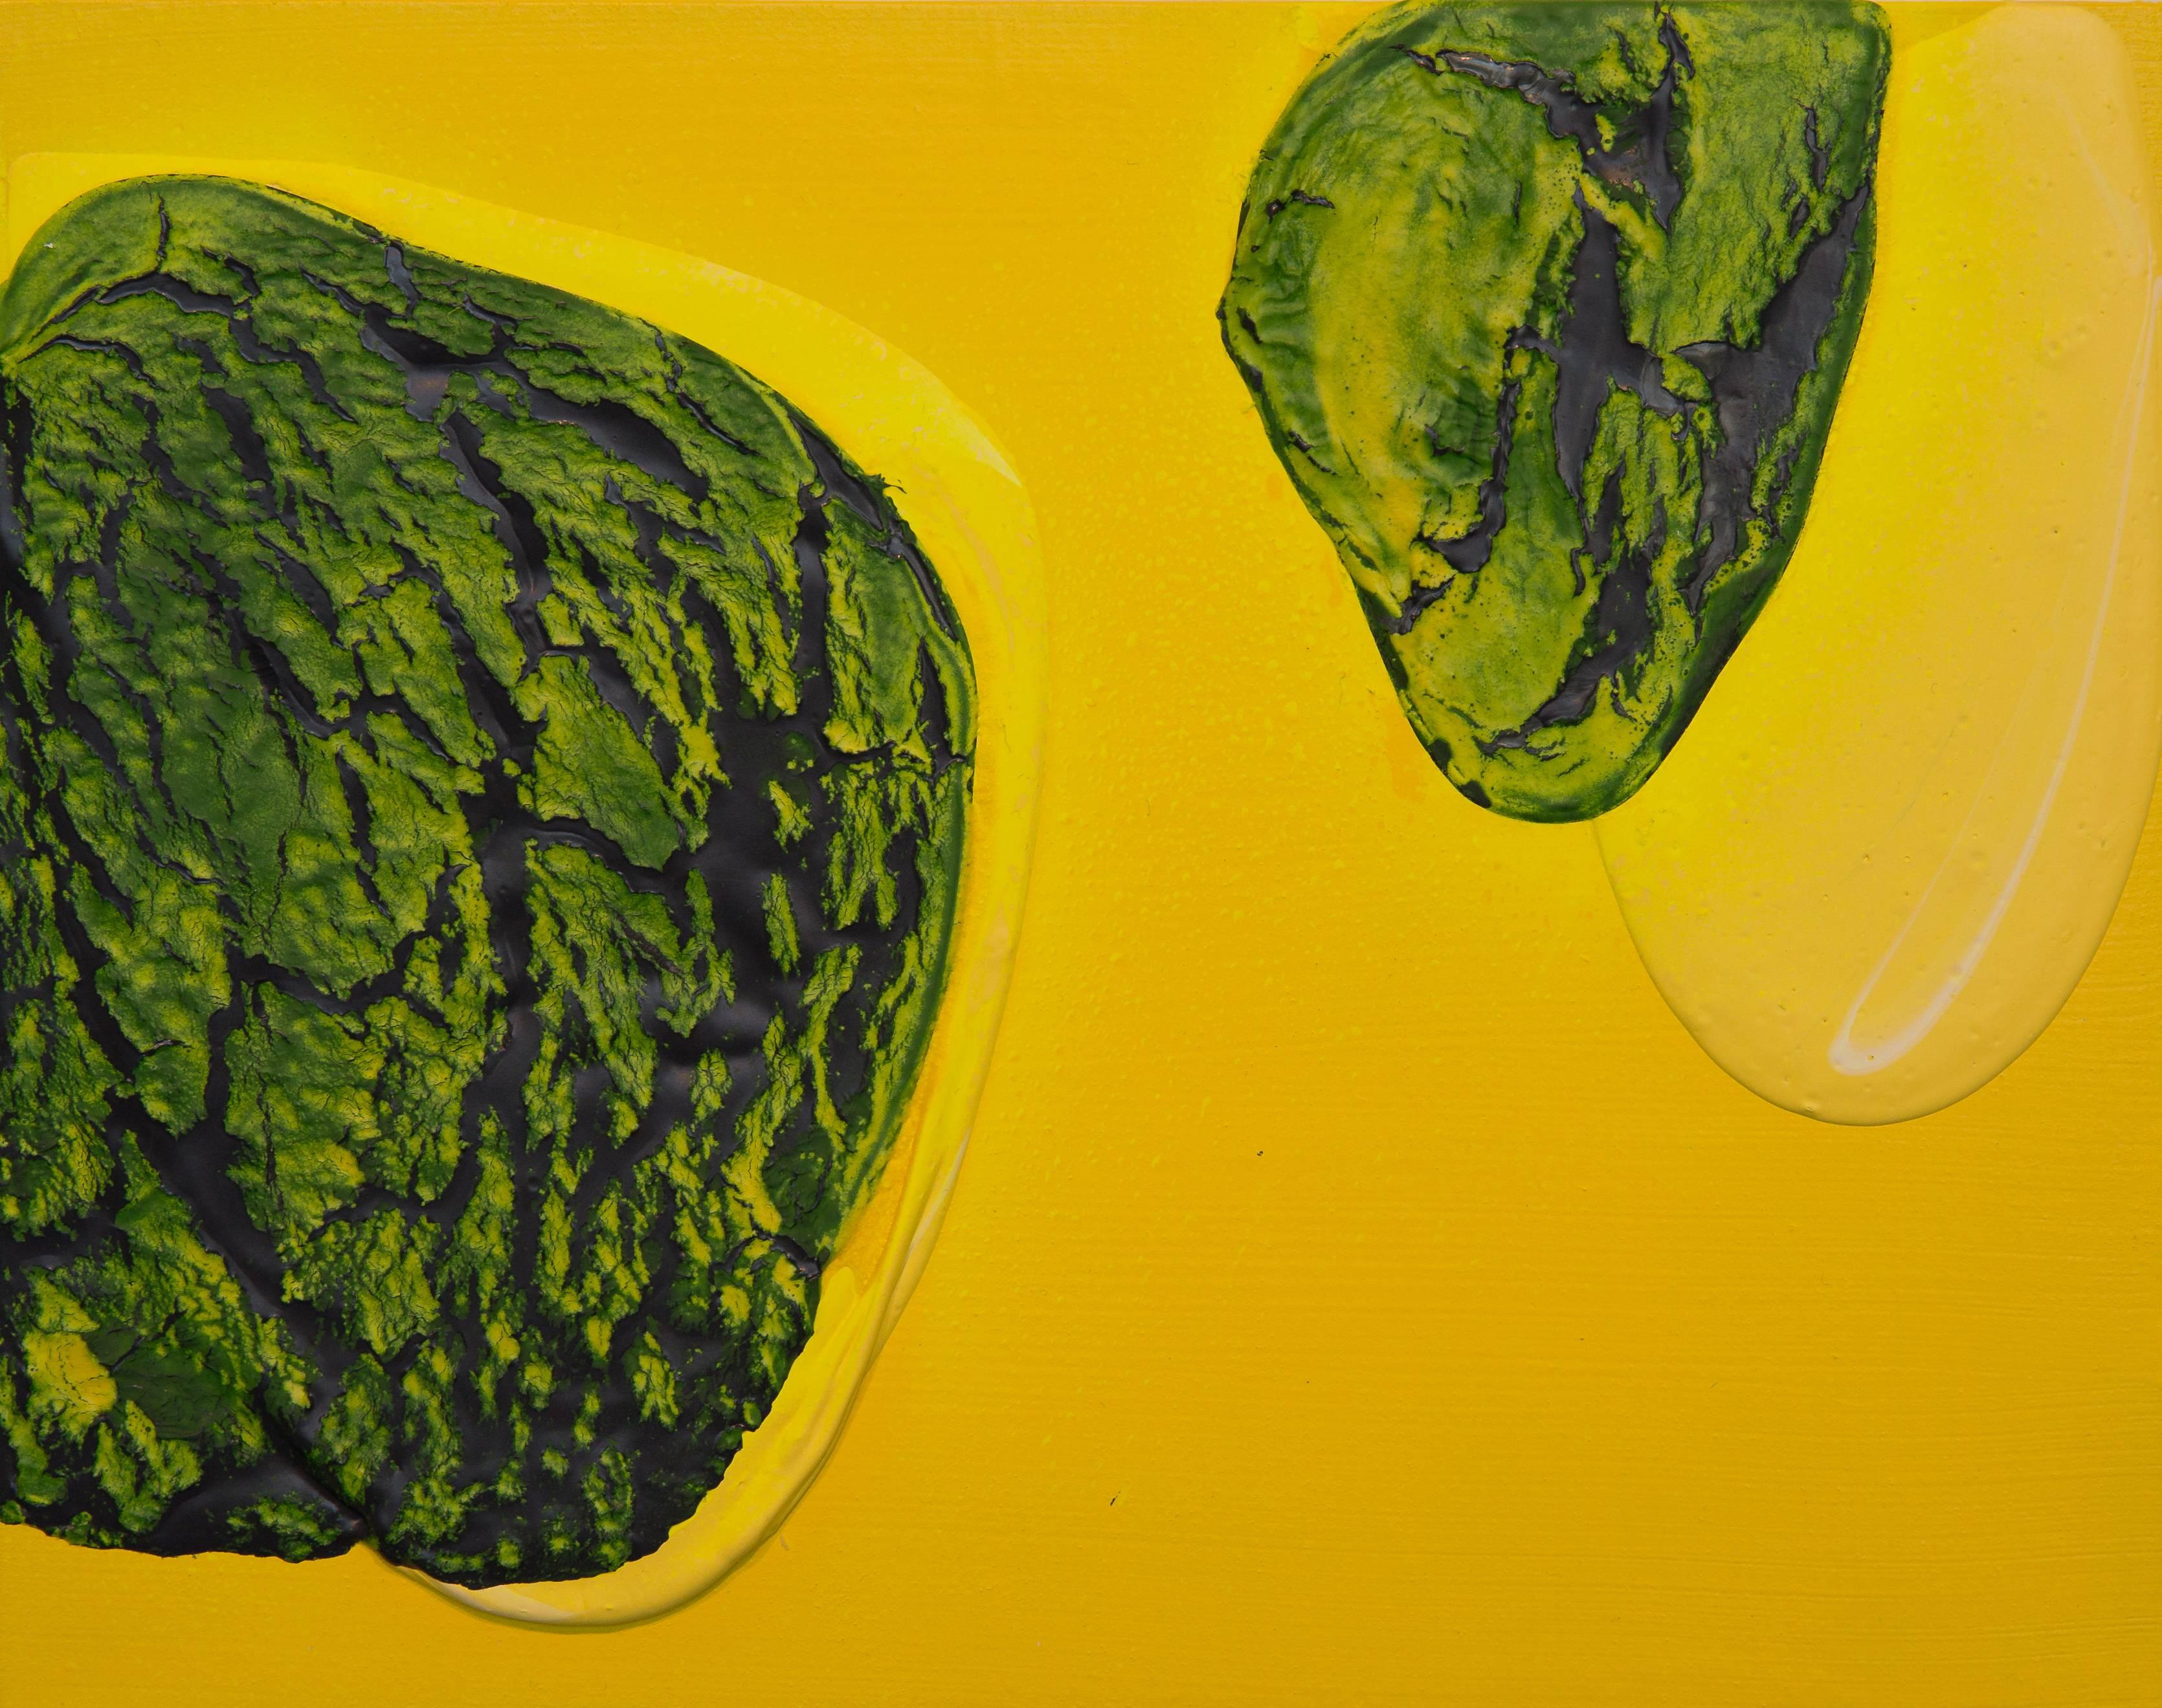 Abstract Painting Renee Phillips - Étude de la méditation X - peinture abstraite vert et jaune